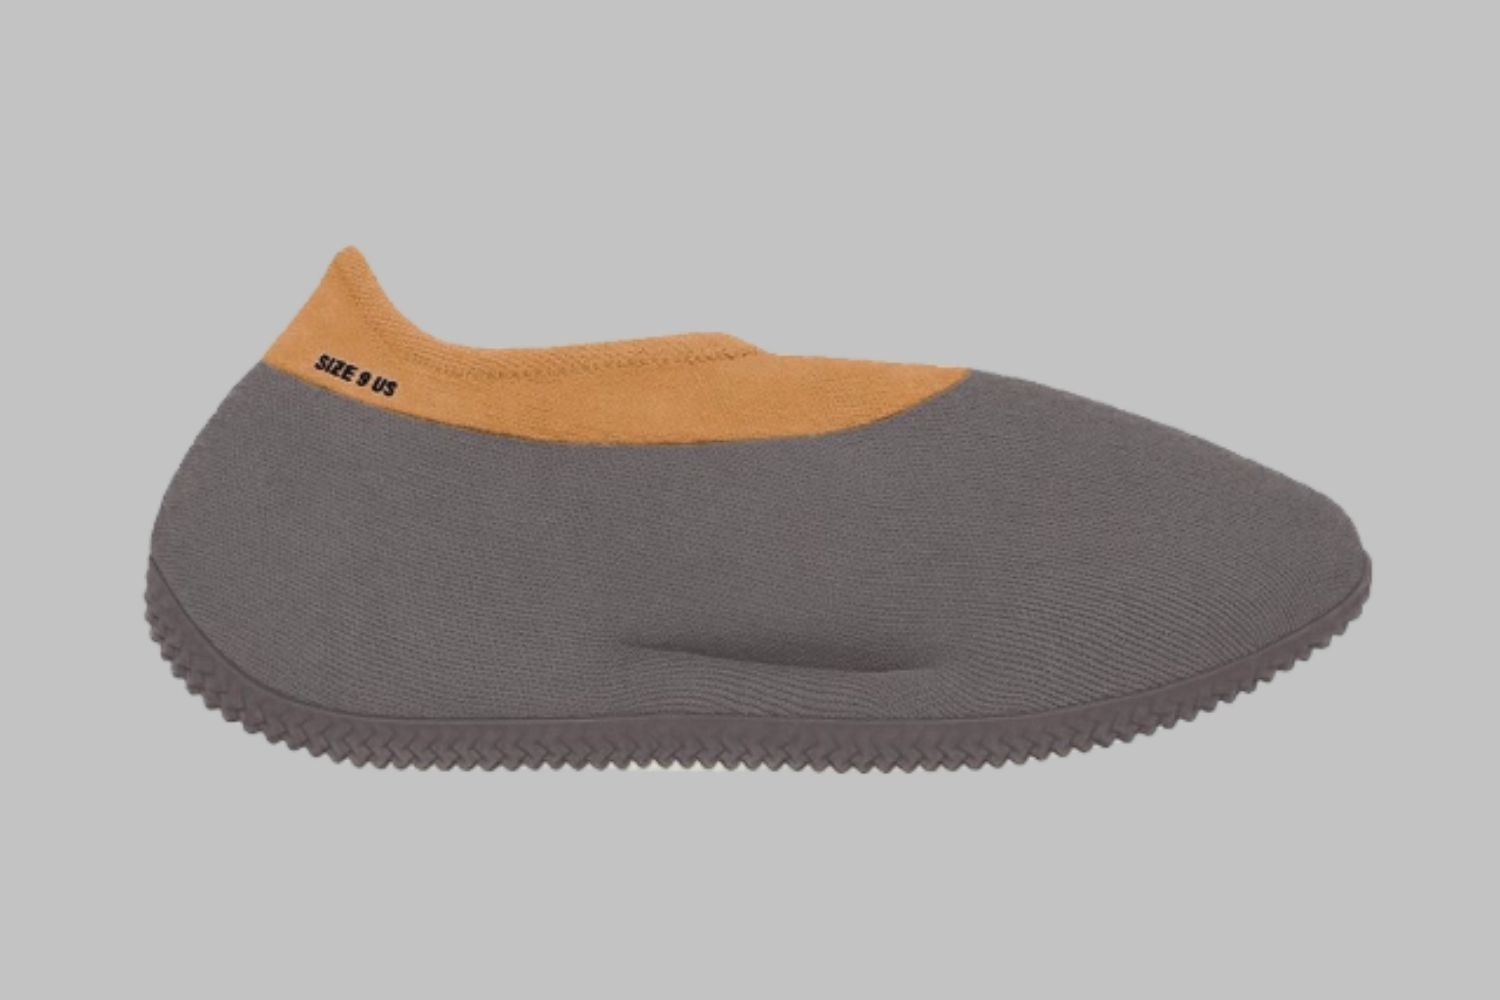 De adidas Yeezy Knit Runner in een &#8216;Stone Carbon&#8217; colorway